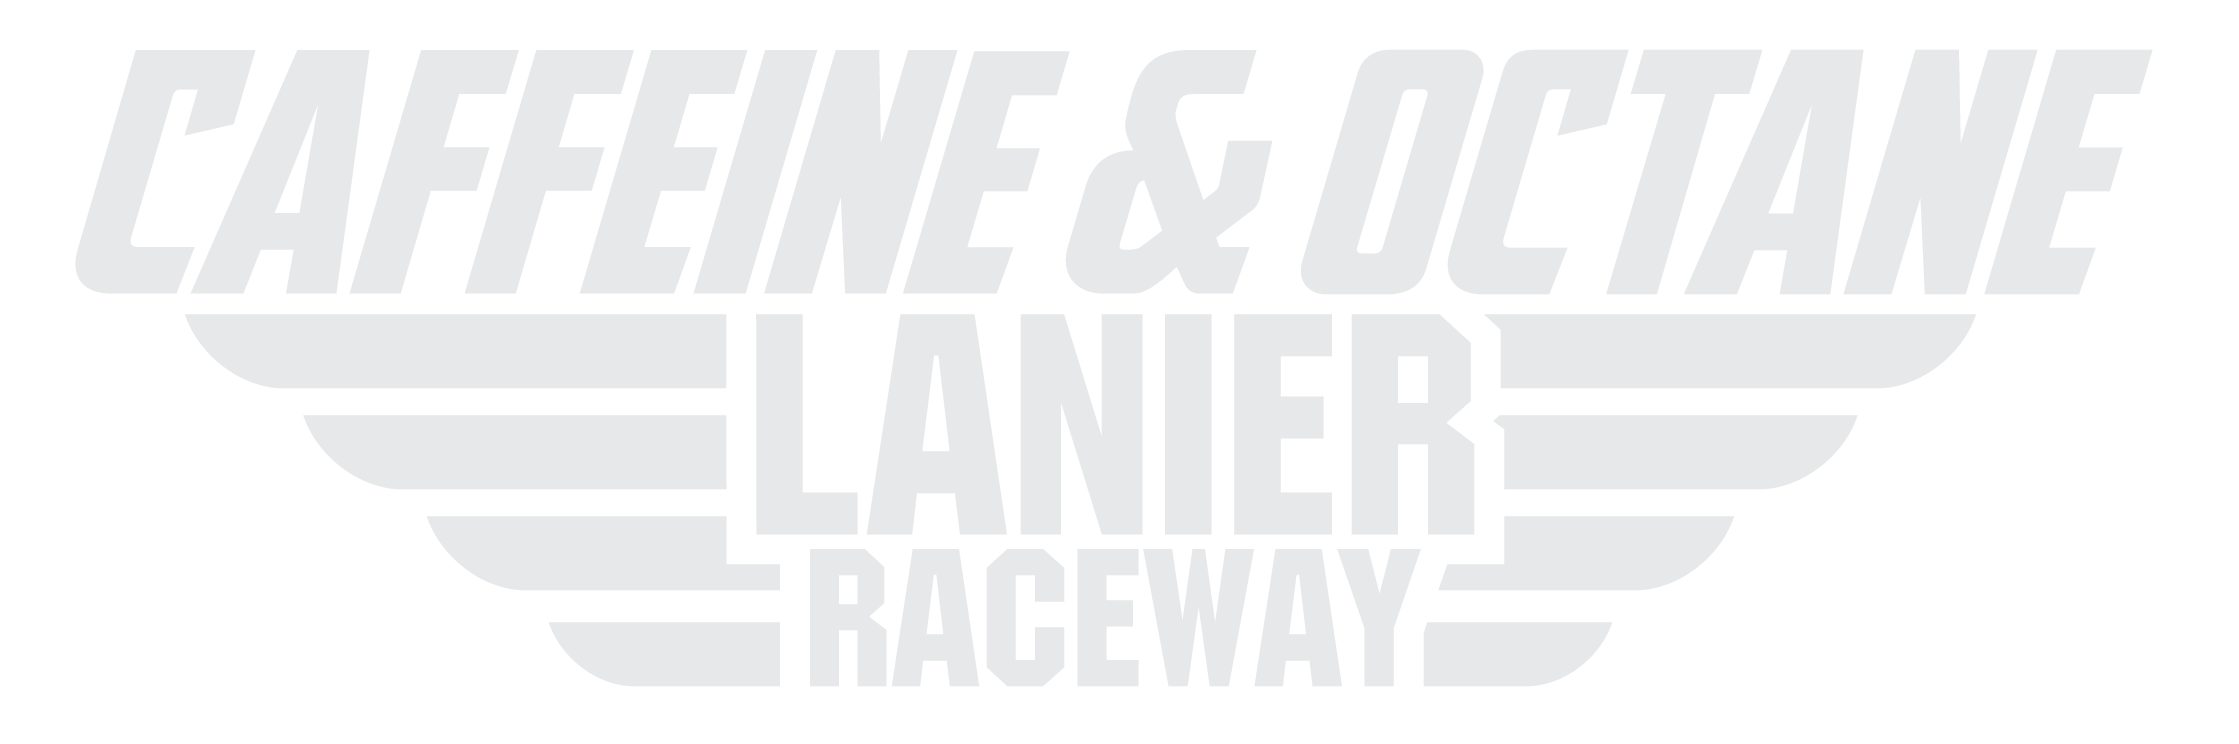 Caffeine and Octane Lanier Raceway